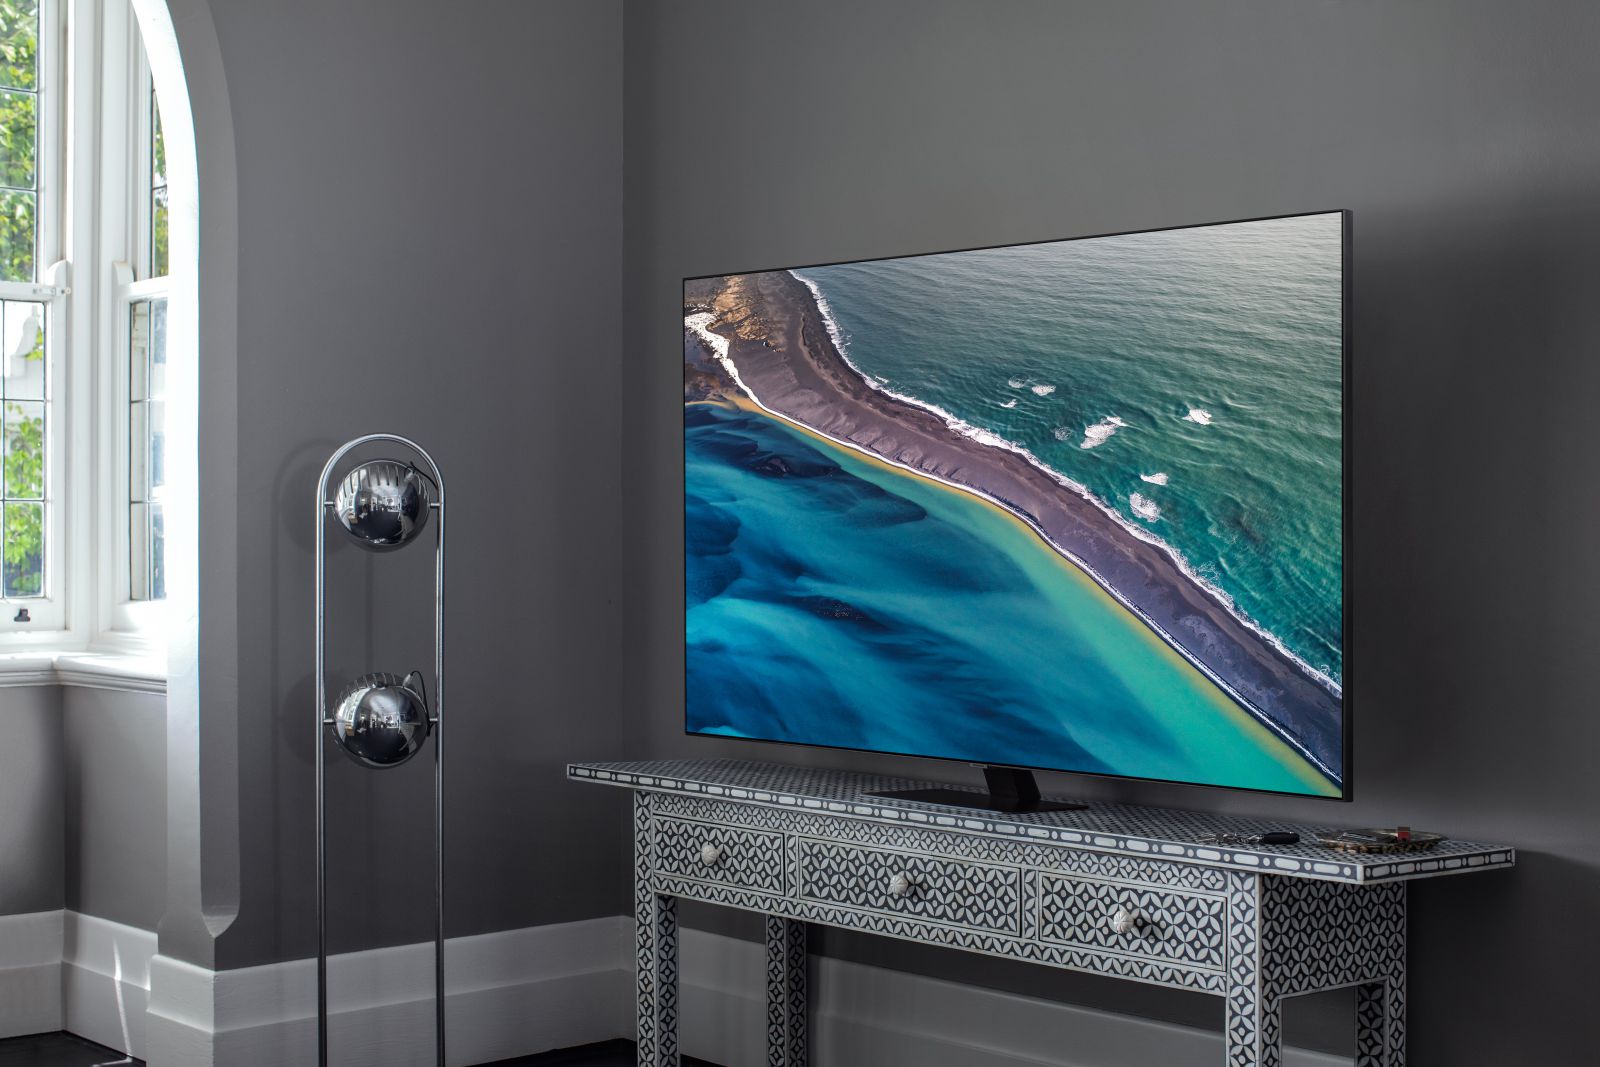 Dòng TV QLED 4K Và Crystal UHD 4K 2020 của Samsung có gì đặc biệt